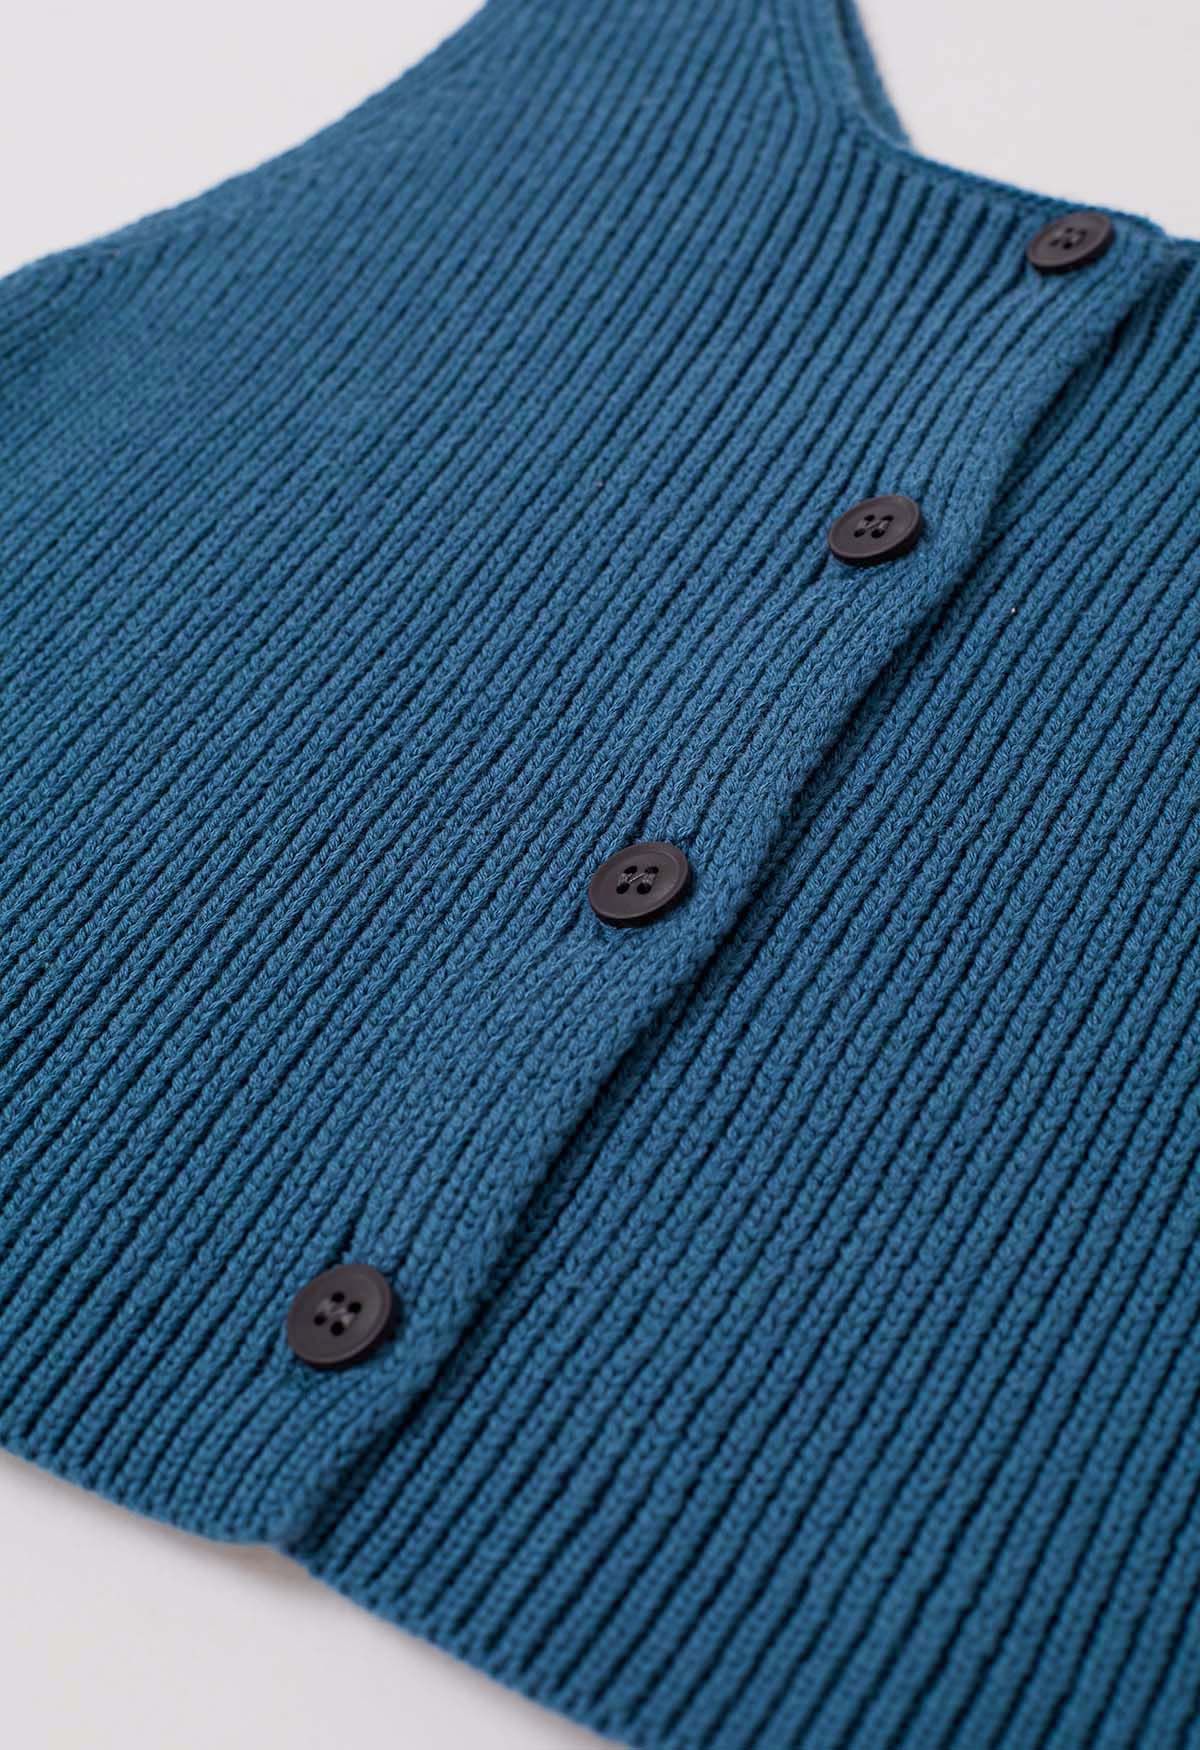 Ärmelloses Crop-Top aus Strick mit Knopfleiste in Blaugrün